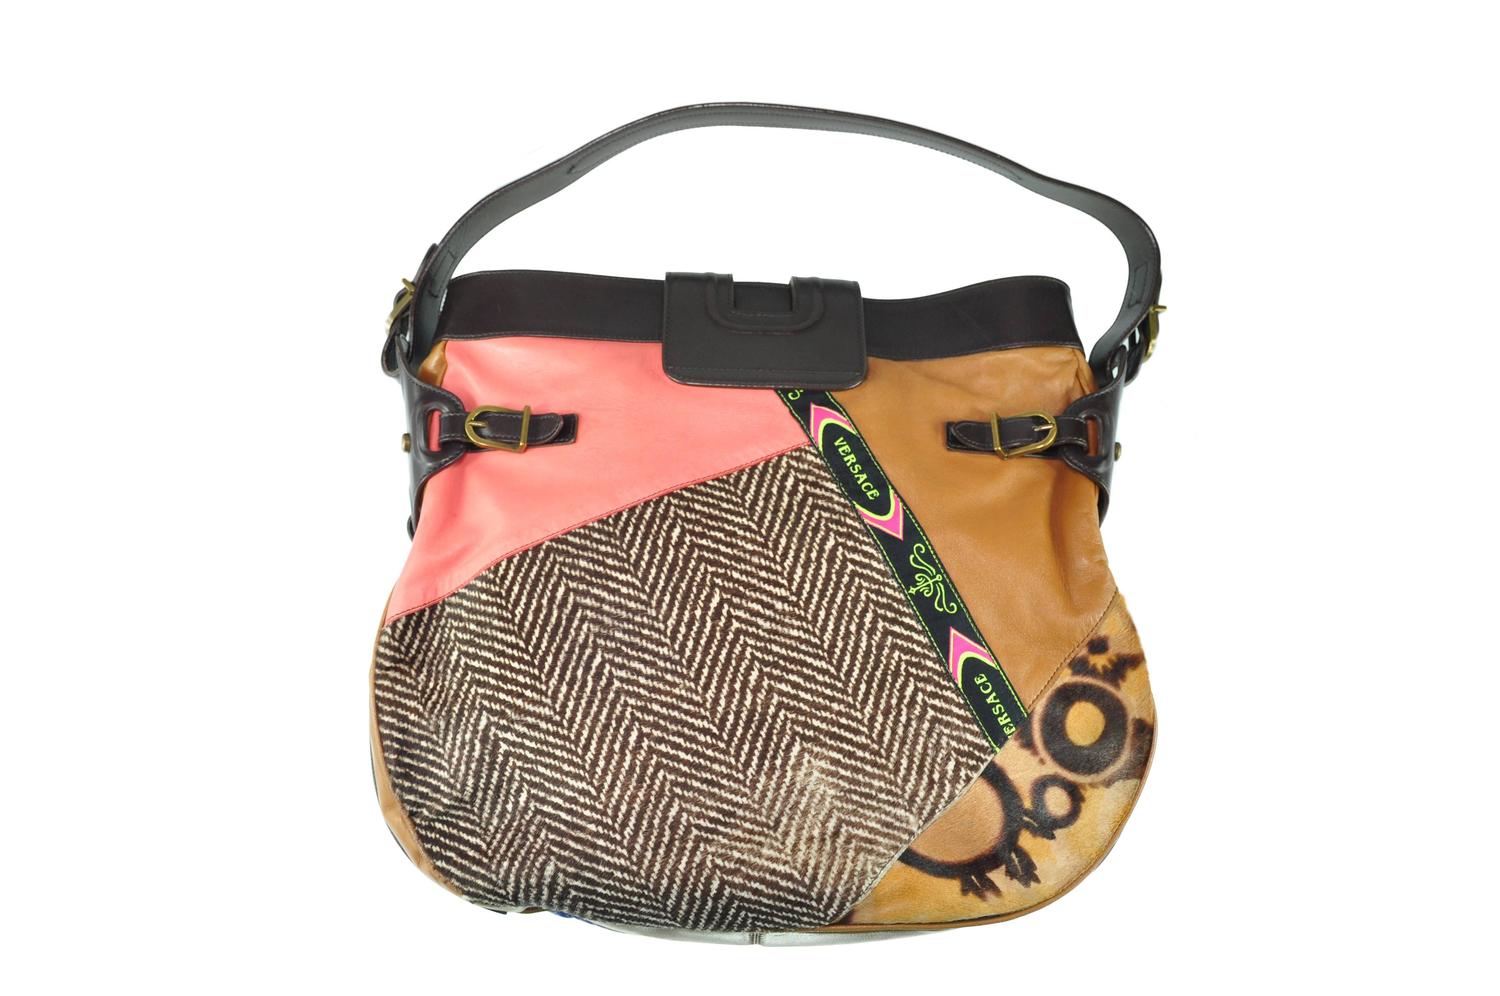 Gianni Versace Vintage Multi-color Patchwork Shoulder Bag at 1stdibs